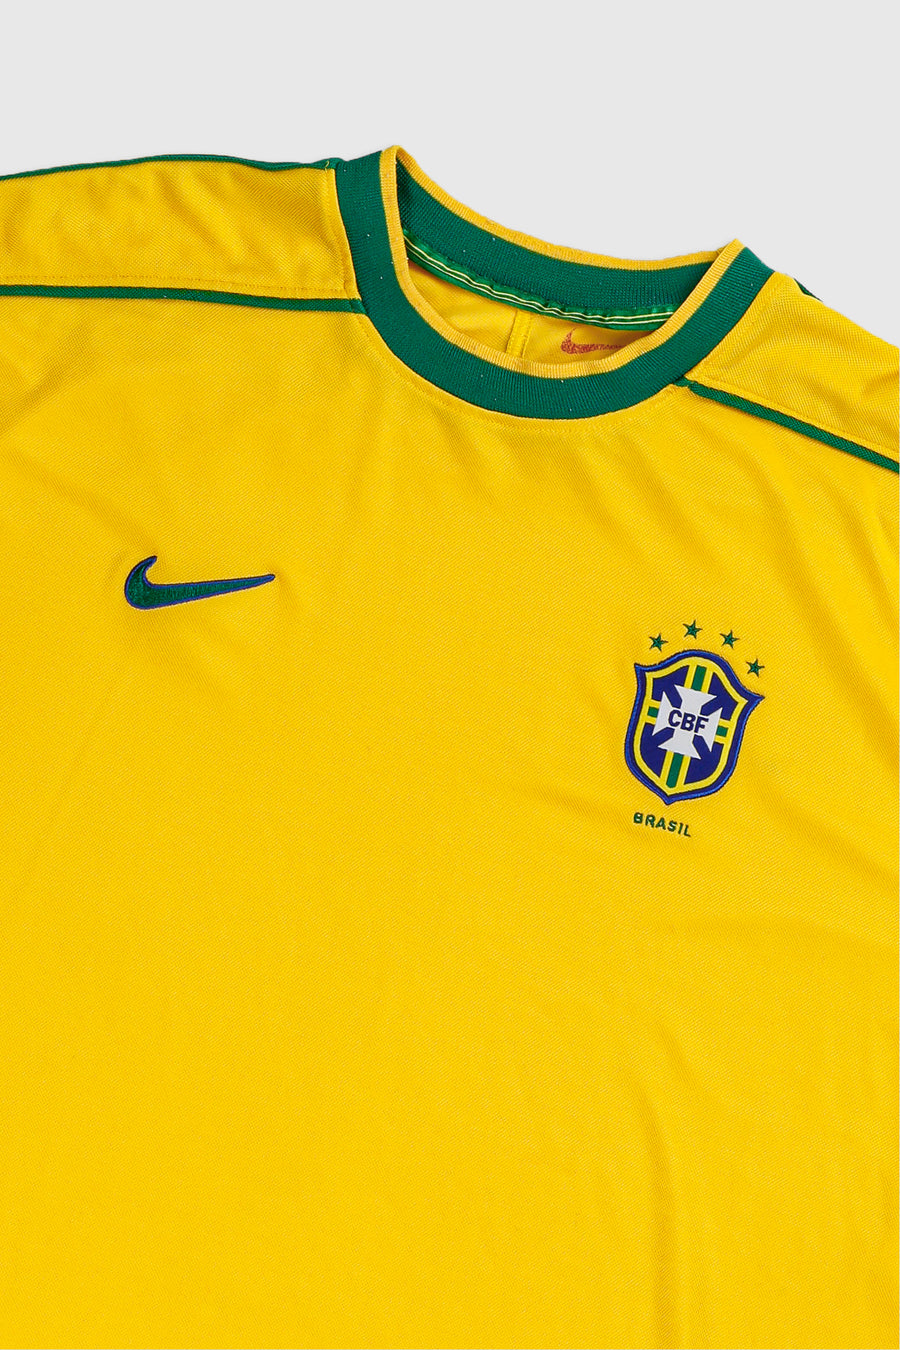 Vintage Brazil Soccer Jersey - XL